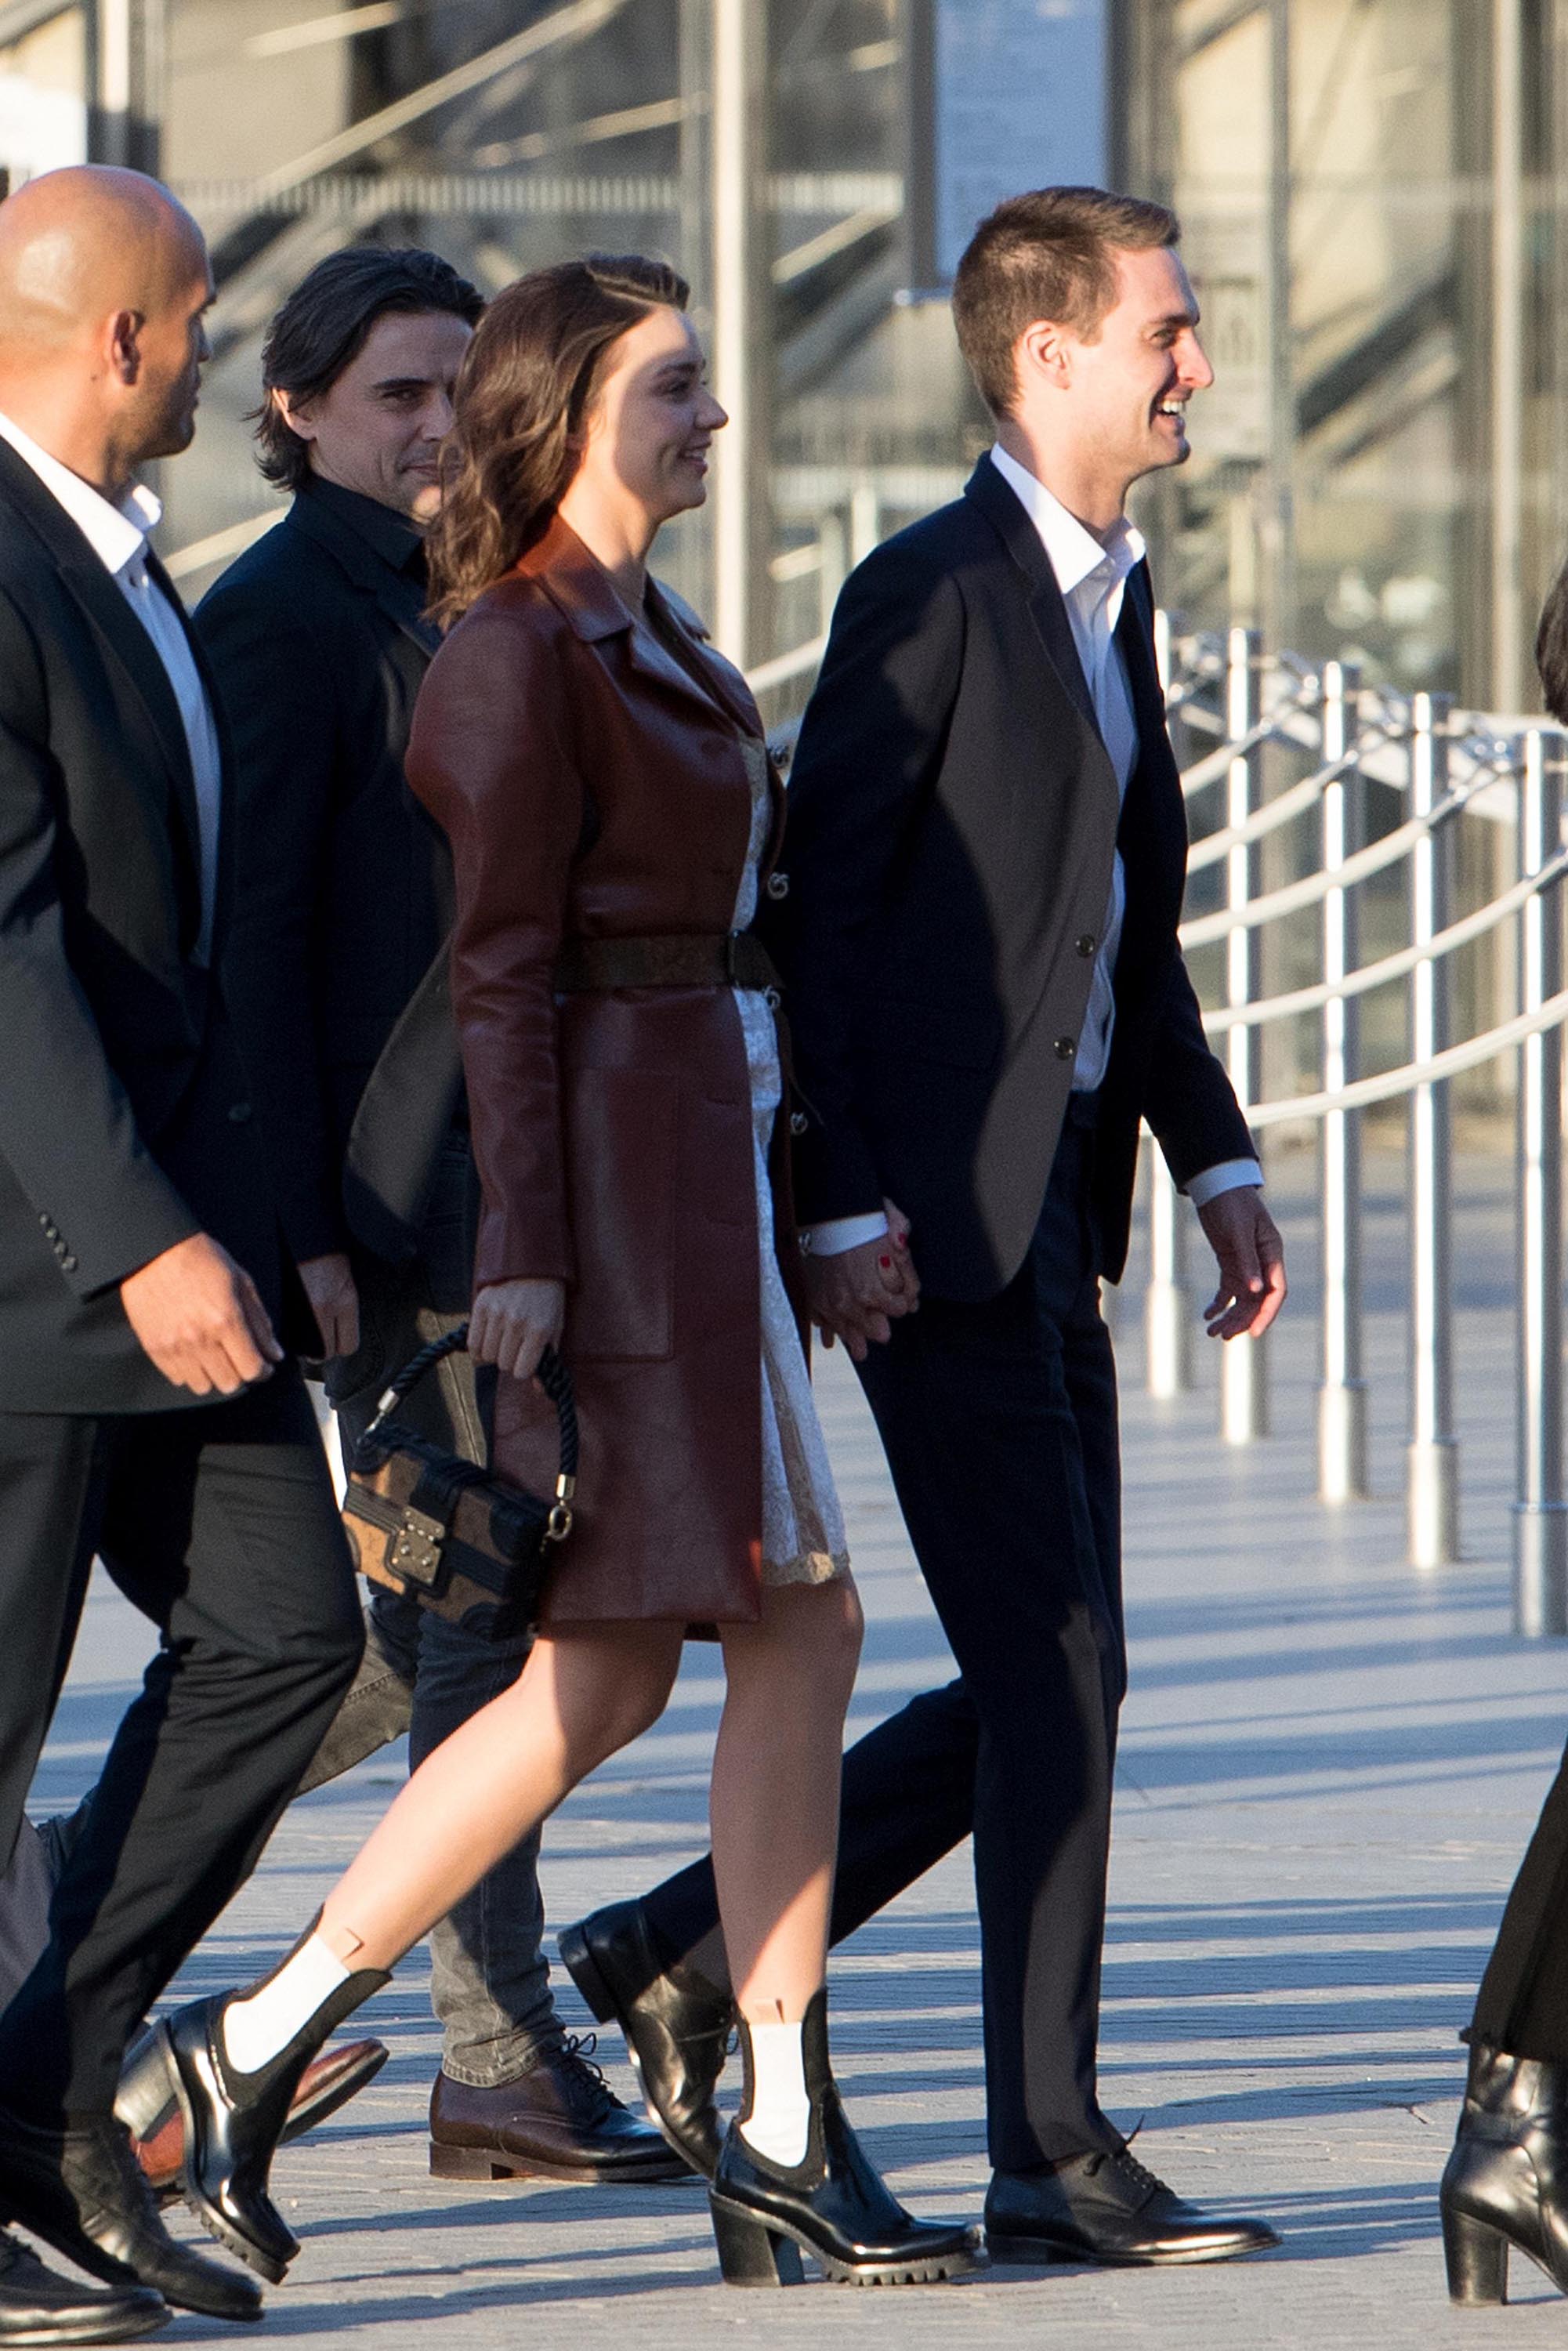 Miranda Kerr attends Louis Vuitton Dinner Party